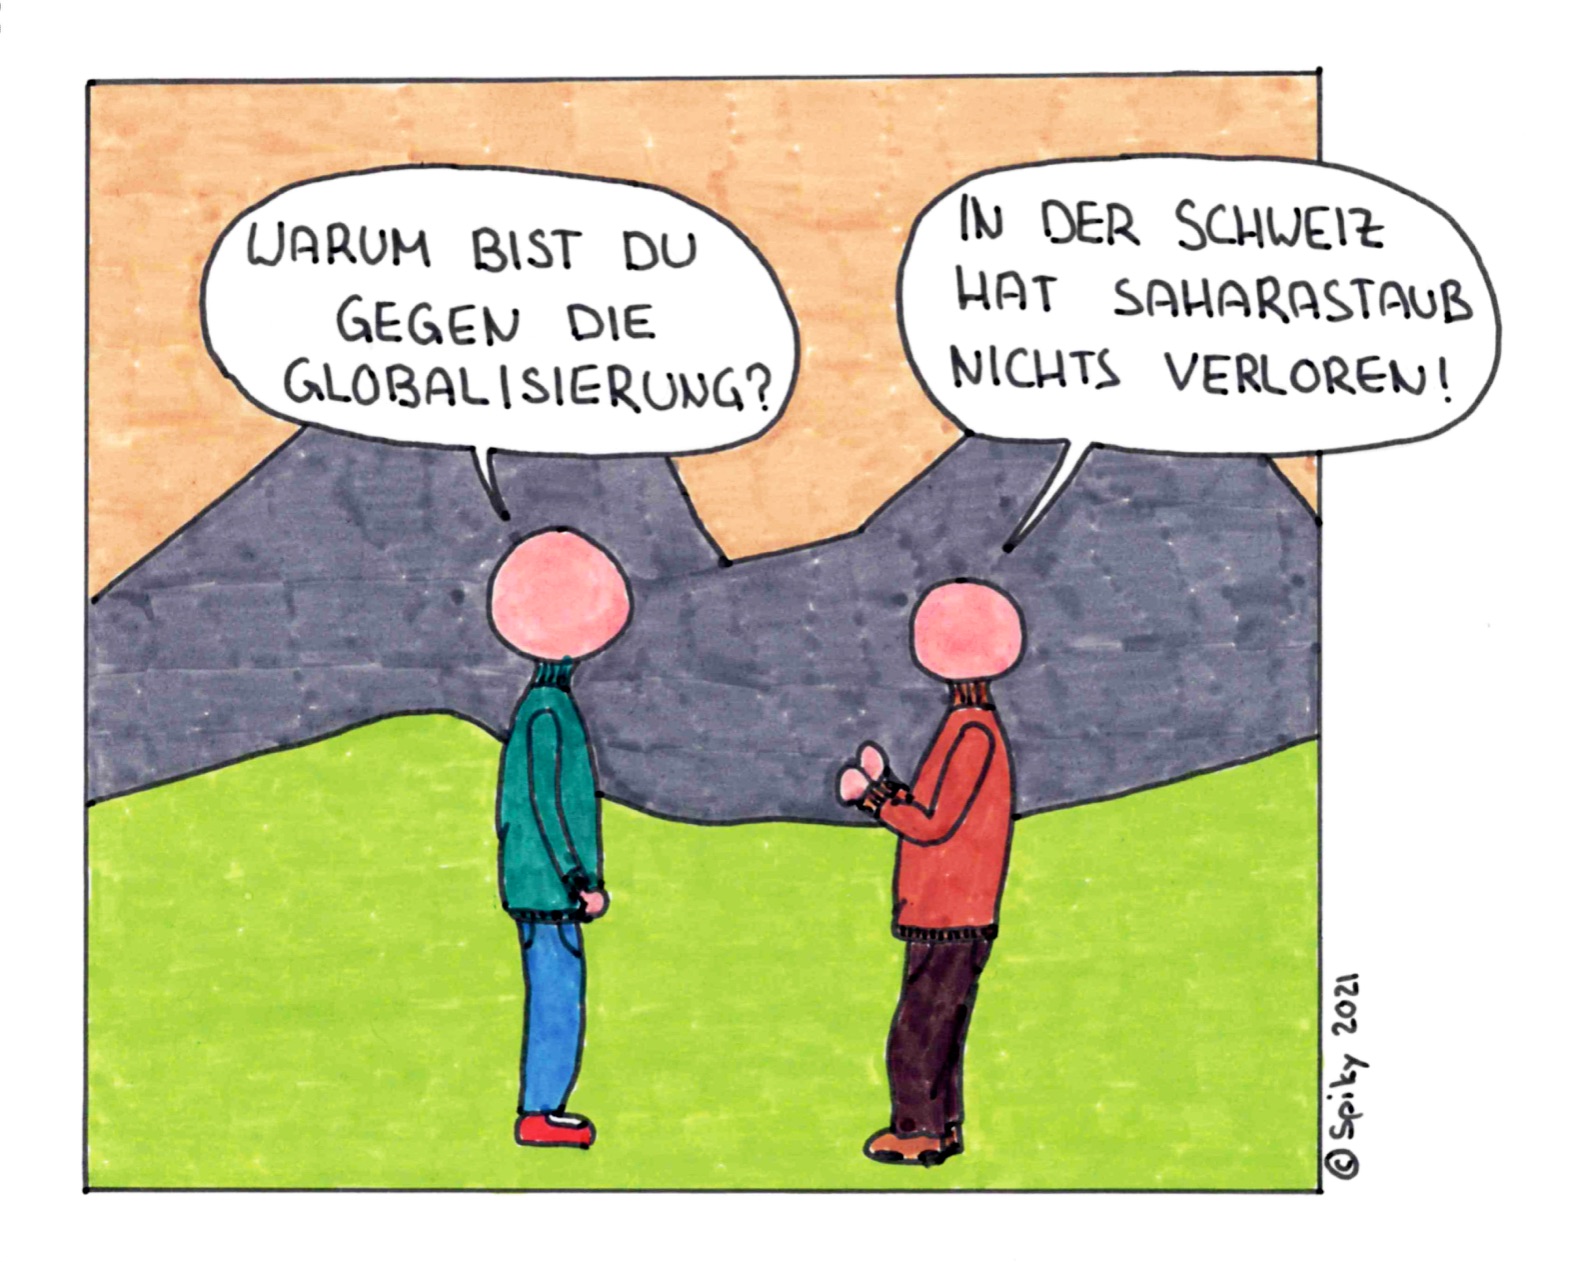 Bilderwitz vom Sit down Comedian: Zwei Männer diskutieren: «Warum bist du gegen die Globalisierung?» «In der Schweiz hat Saharastaub nichts verloren!»